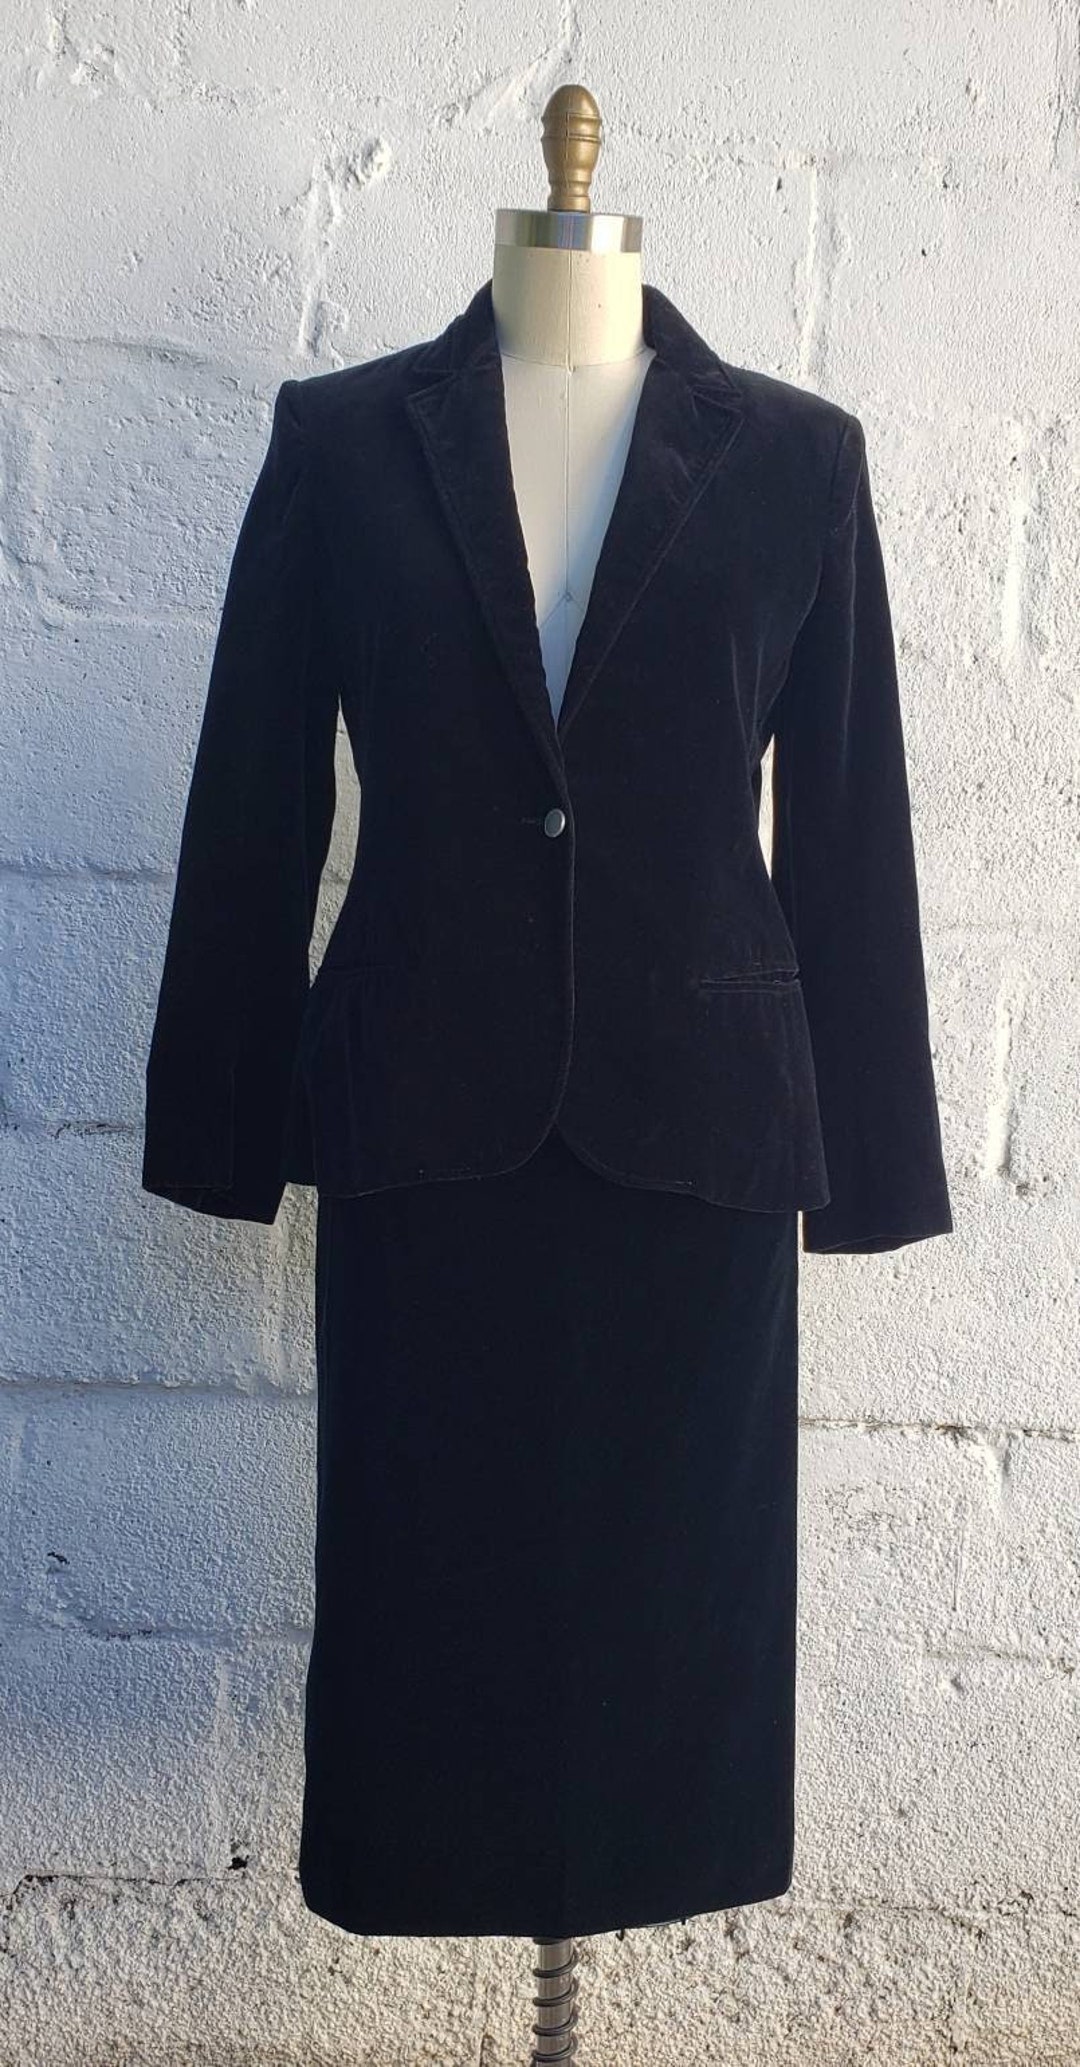 1980s emily Black Velvet Skirt Suit Size 8 - Etsy